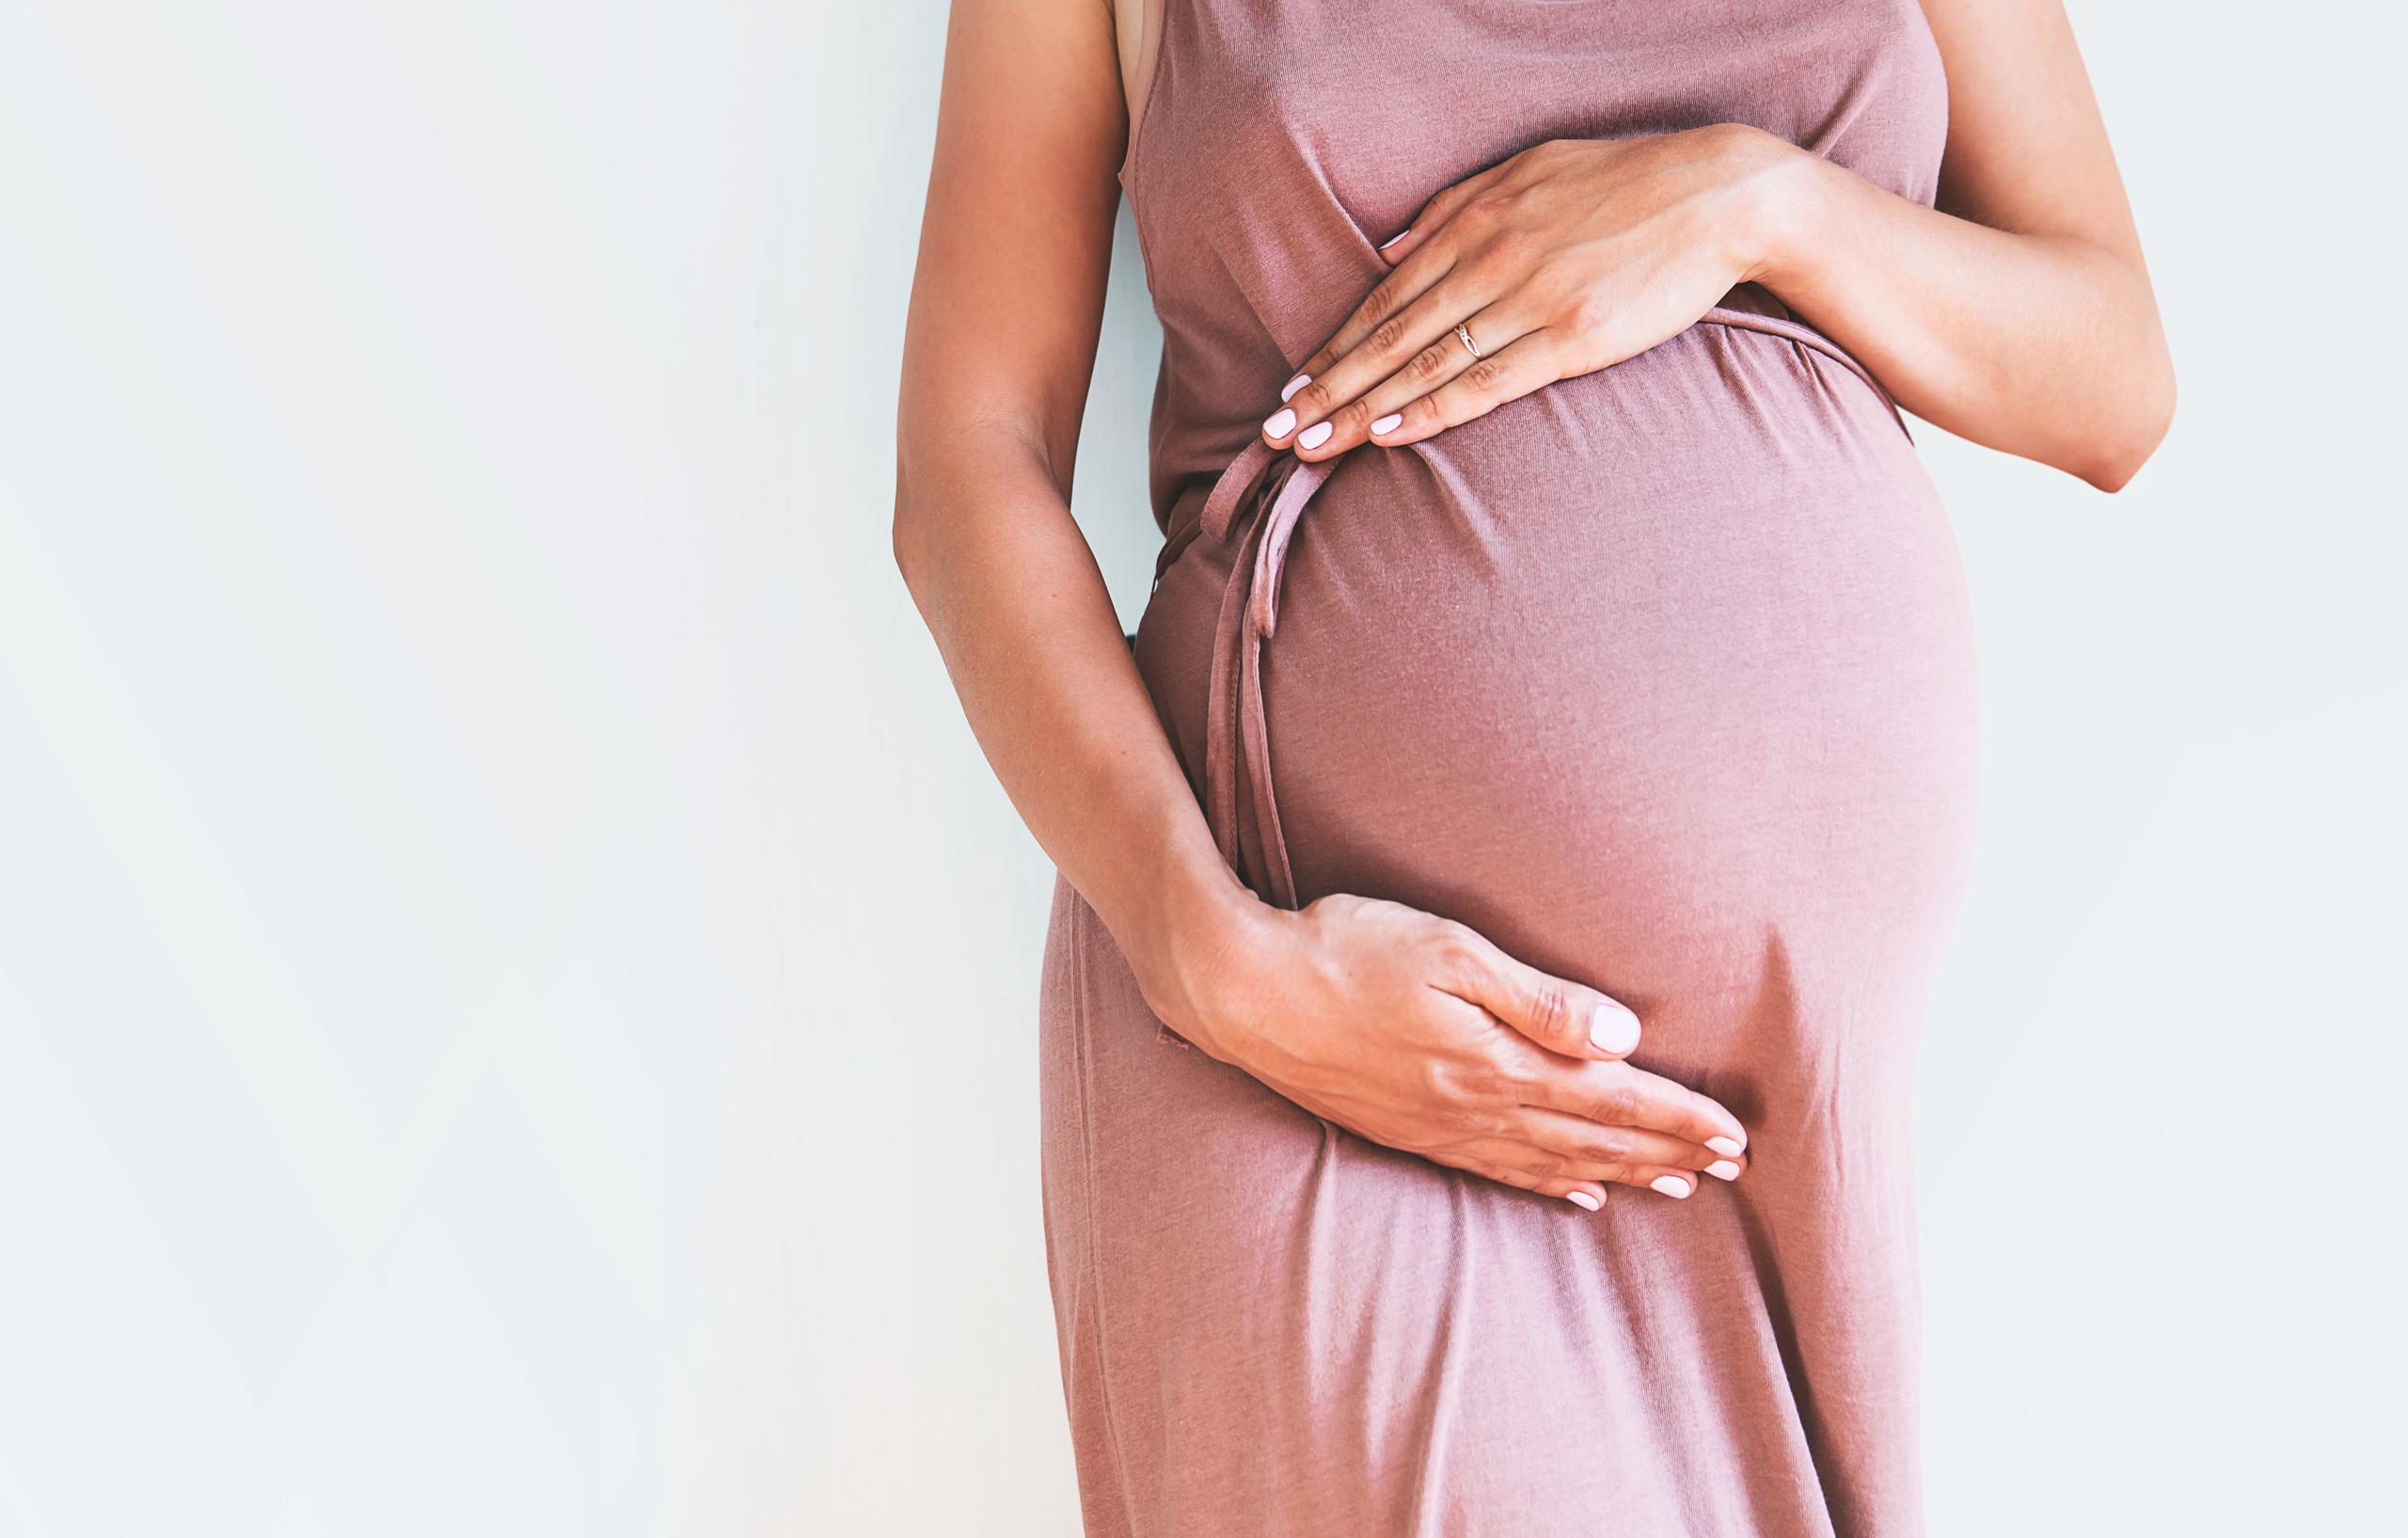 Científicos indican que "debido a que se aplicaron controles estrictos de infección y procedimientos de prevención durante el parto, es probable que el origen del SARS-CoV2 en los neonatos haya sido maternal".